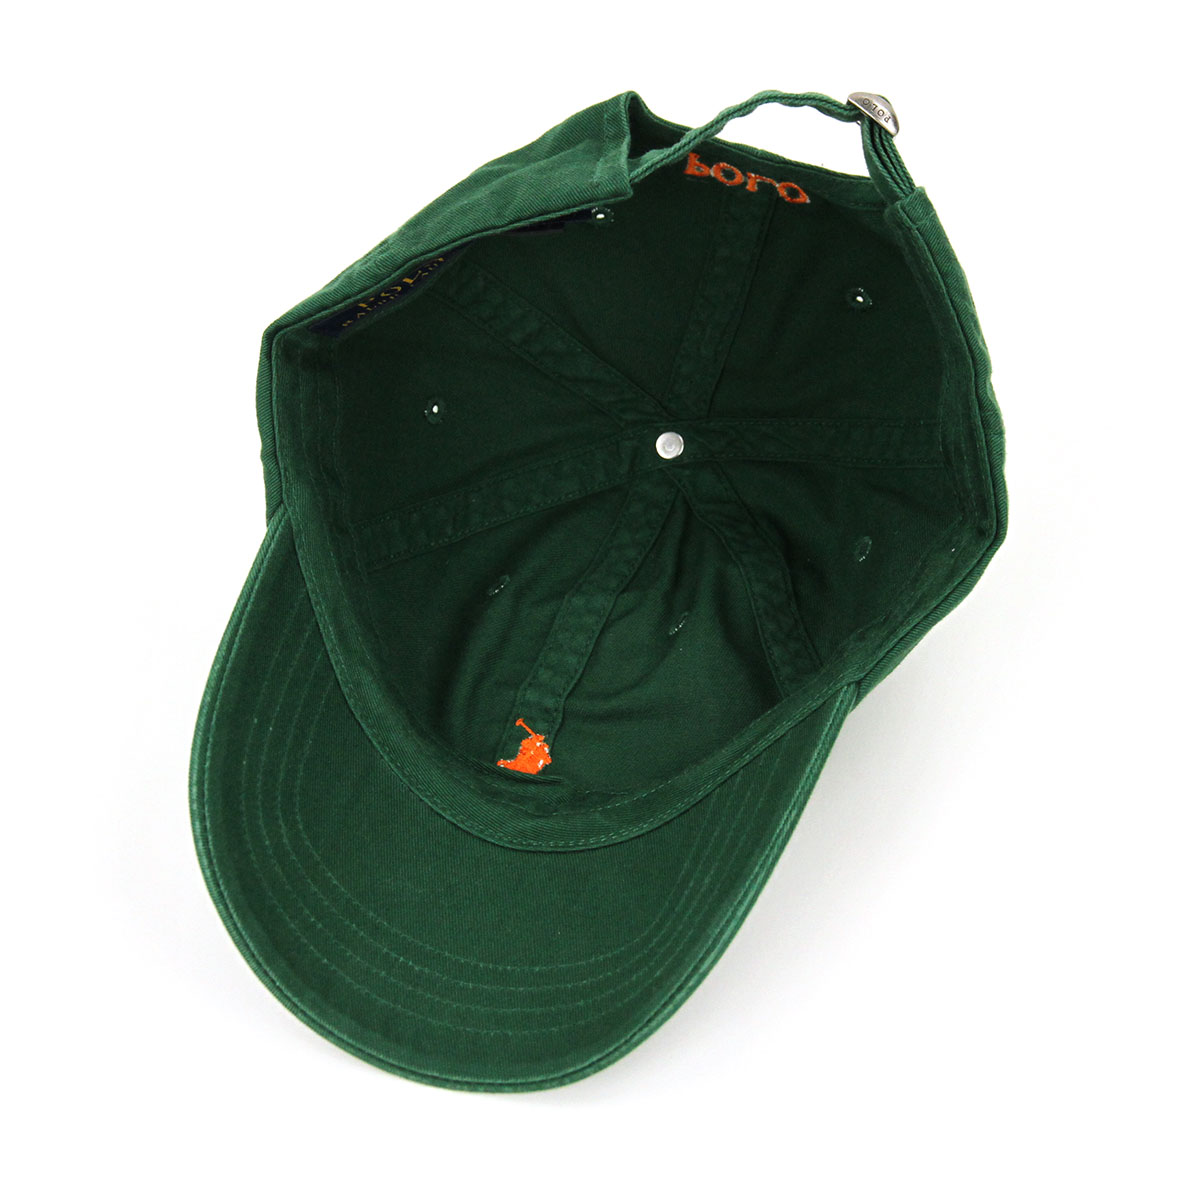 キャップ メンズ POLO RALPH LAUREN 帽子 正規品 ラルフローレン ポロ COTTON CHINO BASEBALL CAP D00S15 - leica-review.com